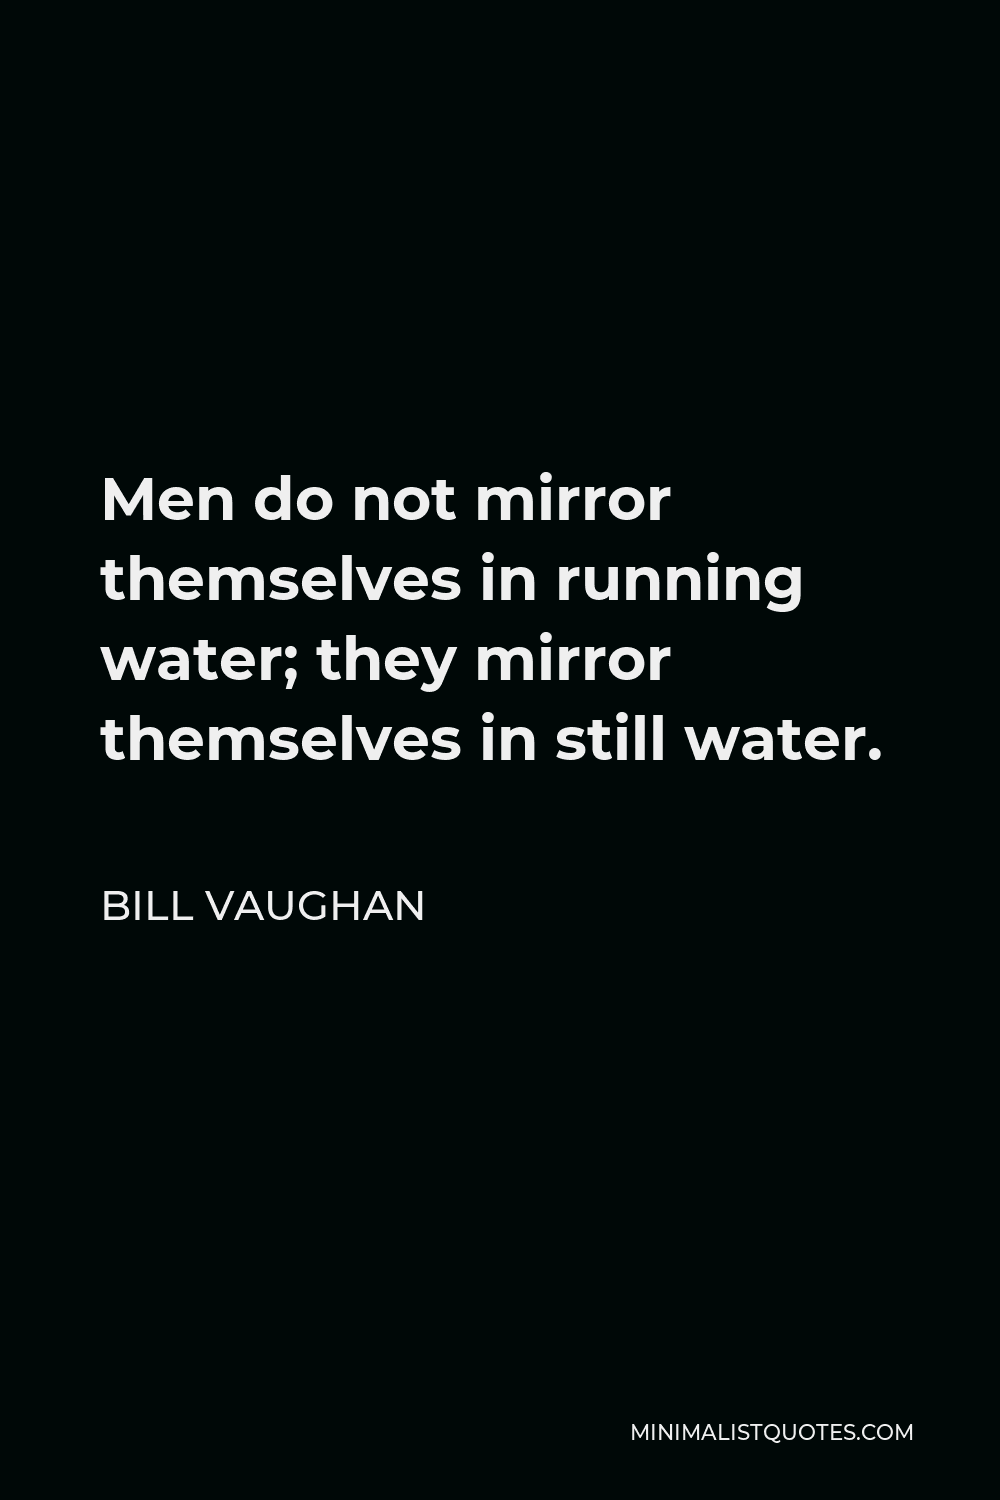 Bill Vaughan Quote - Men do not mirror themselves in running water; they mirror themselves in still water.